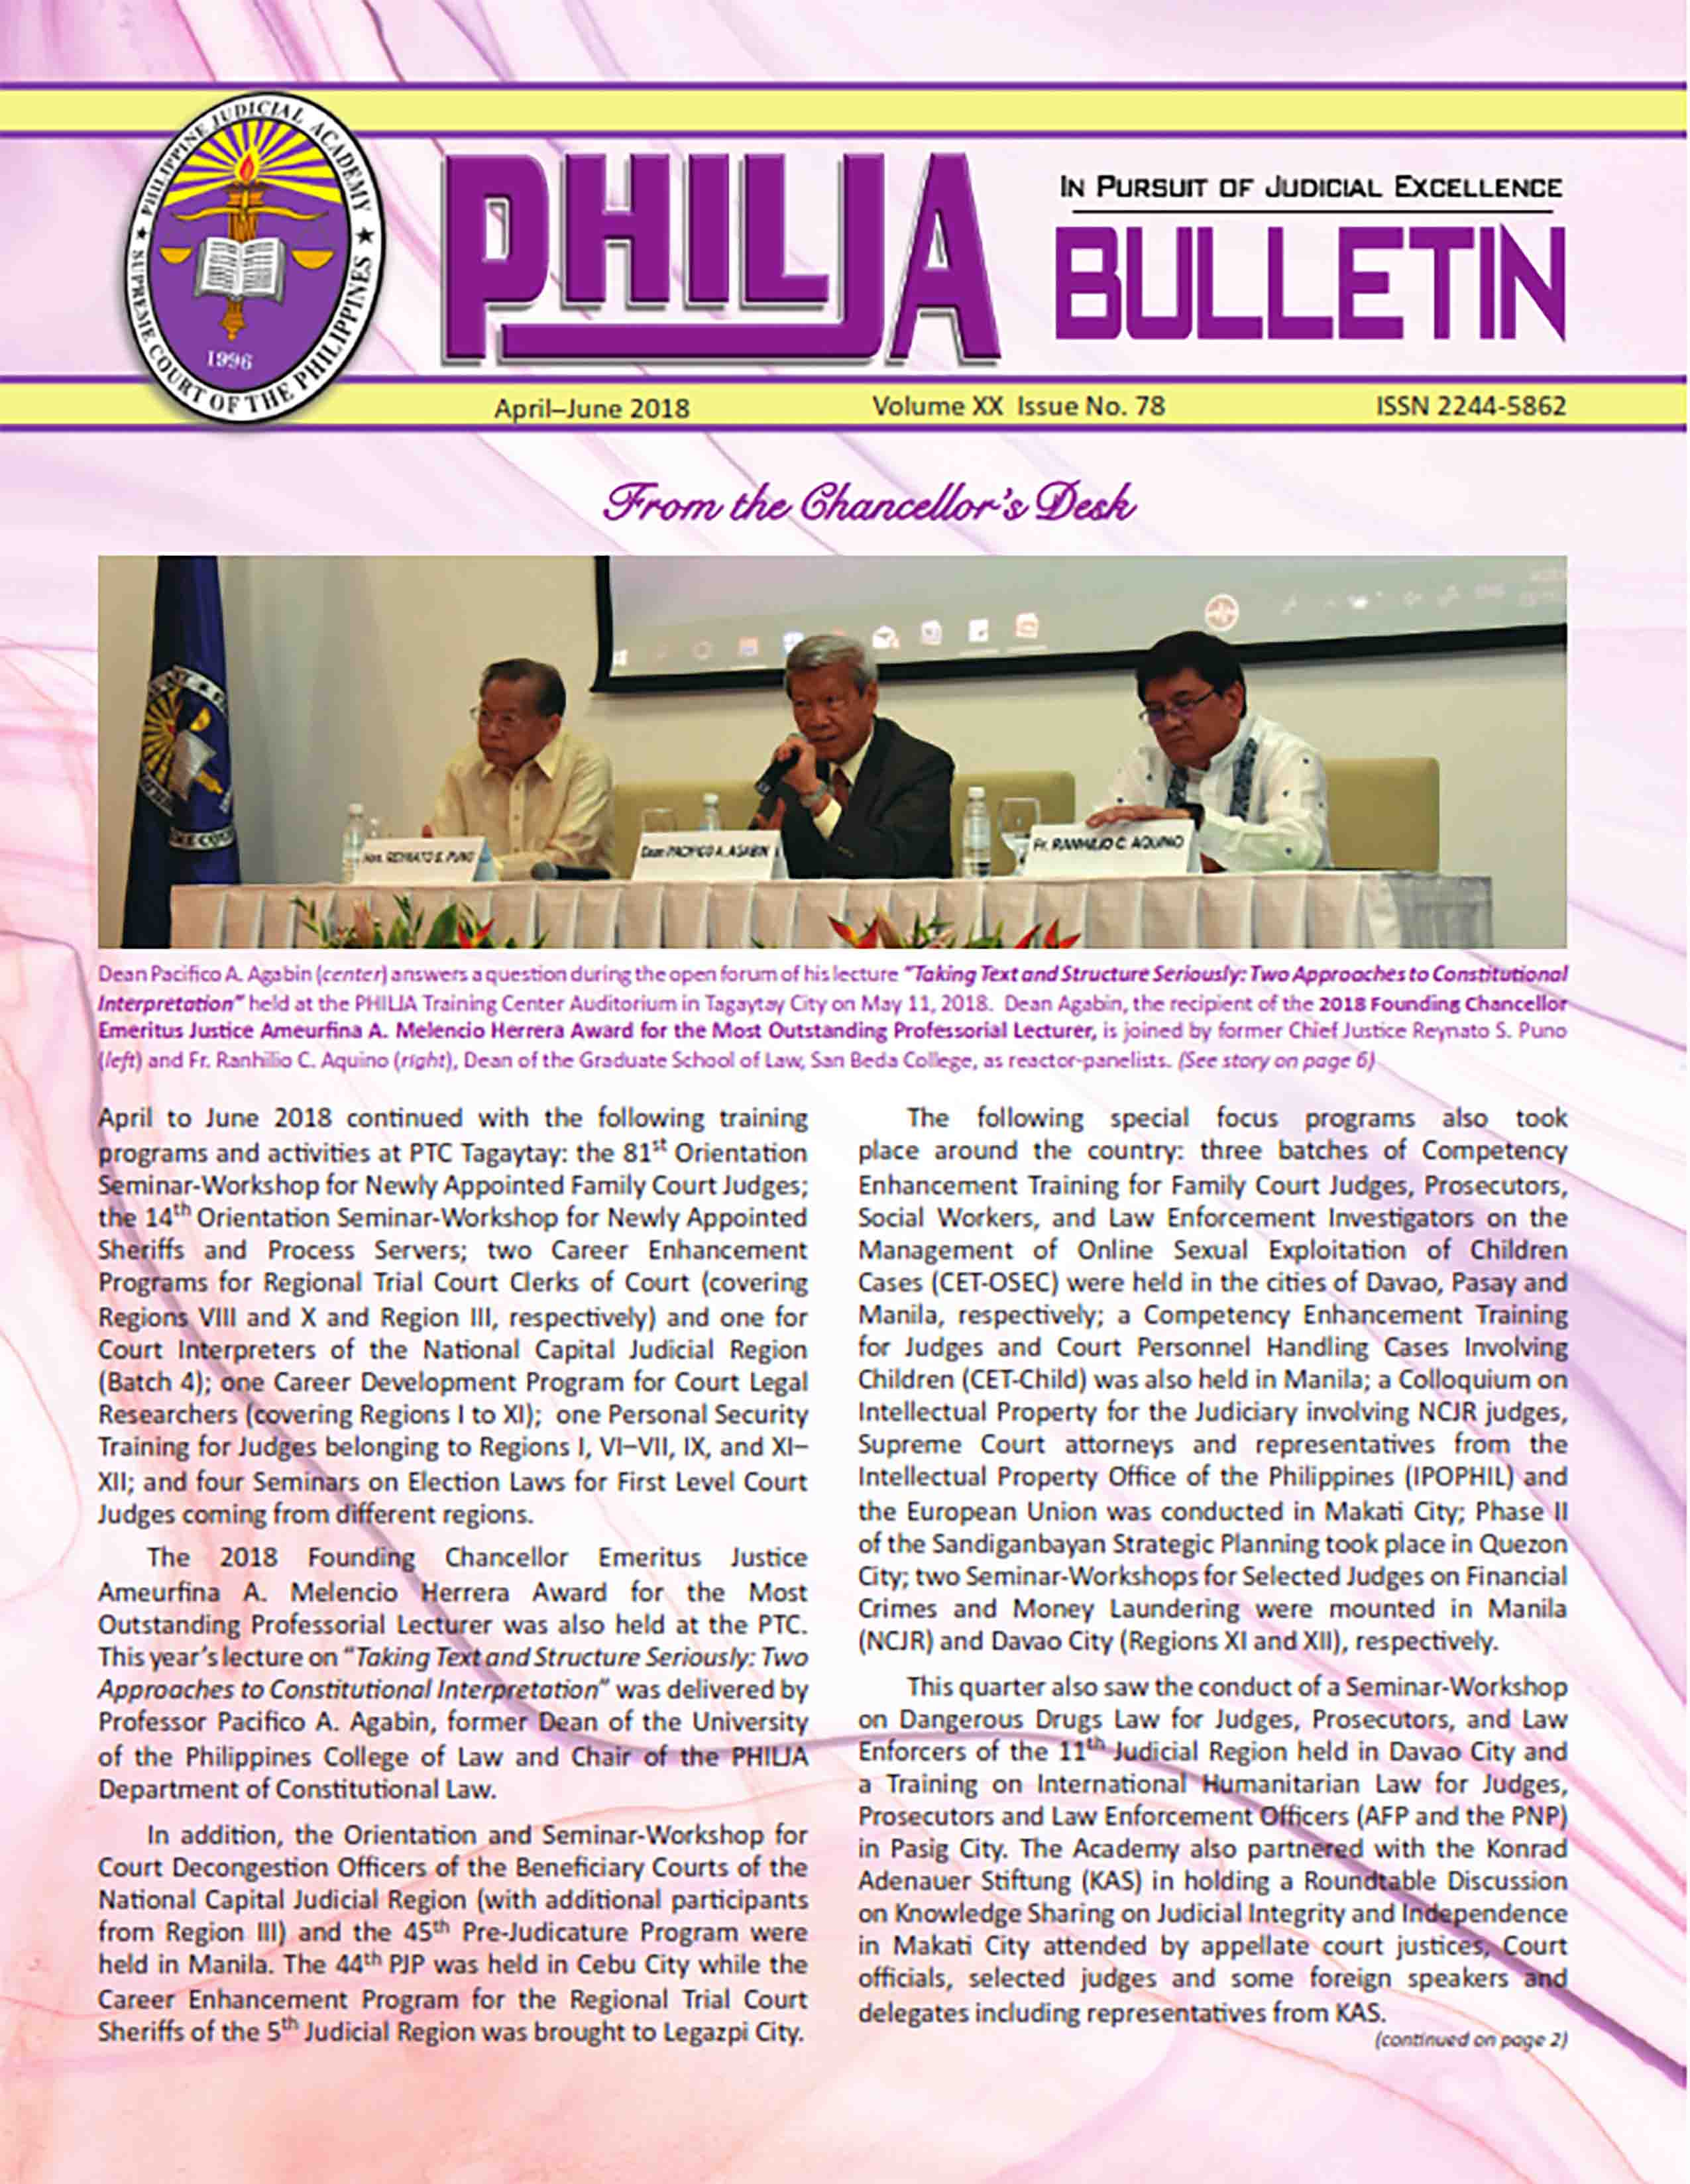 Bulletin 78